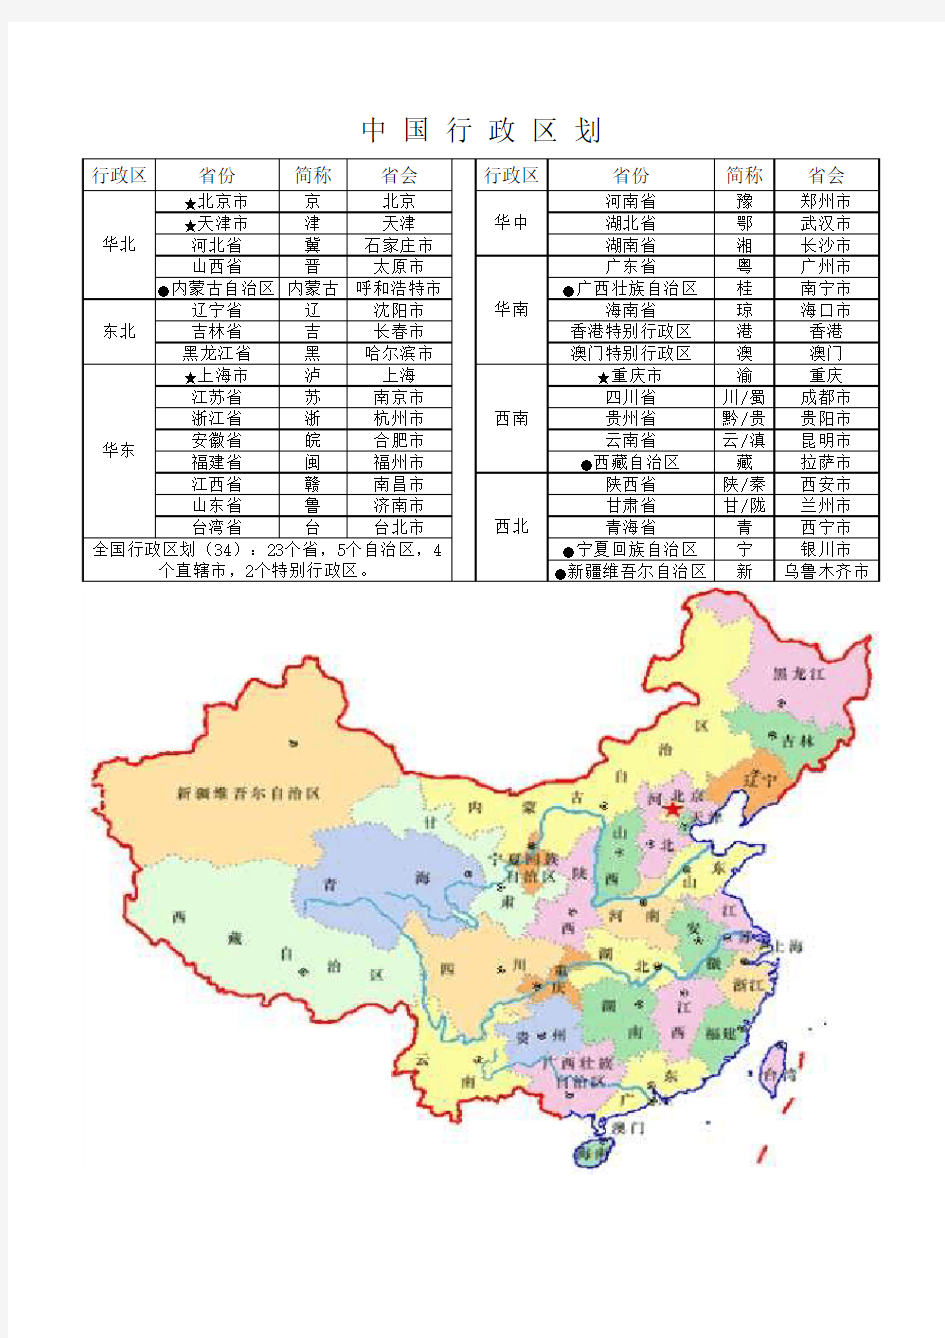 中国行政区划(区域、省份、简称、省会、地图)